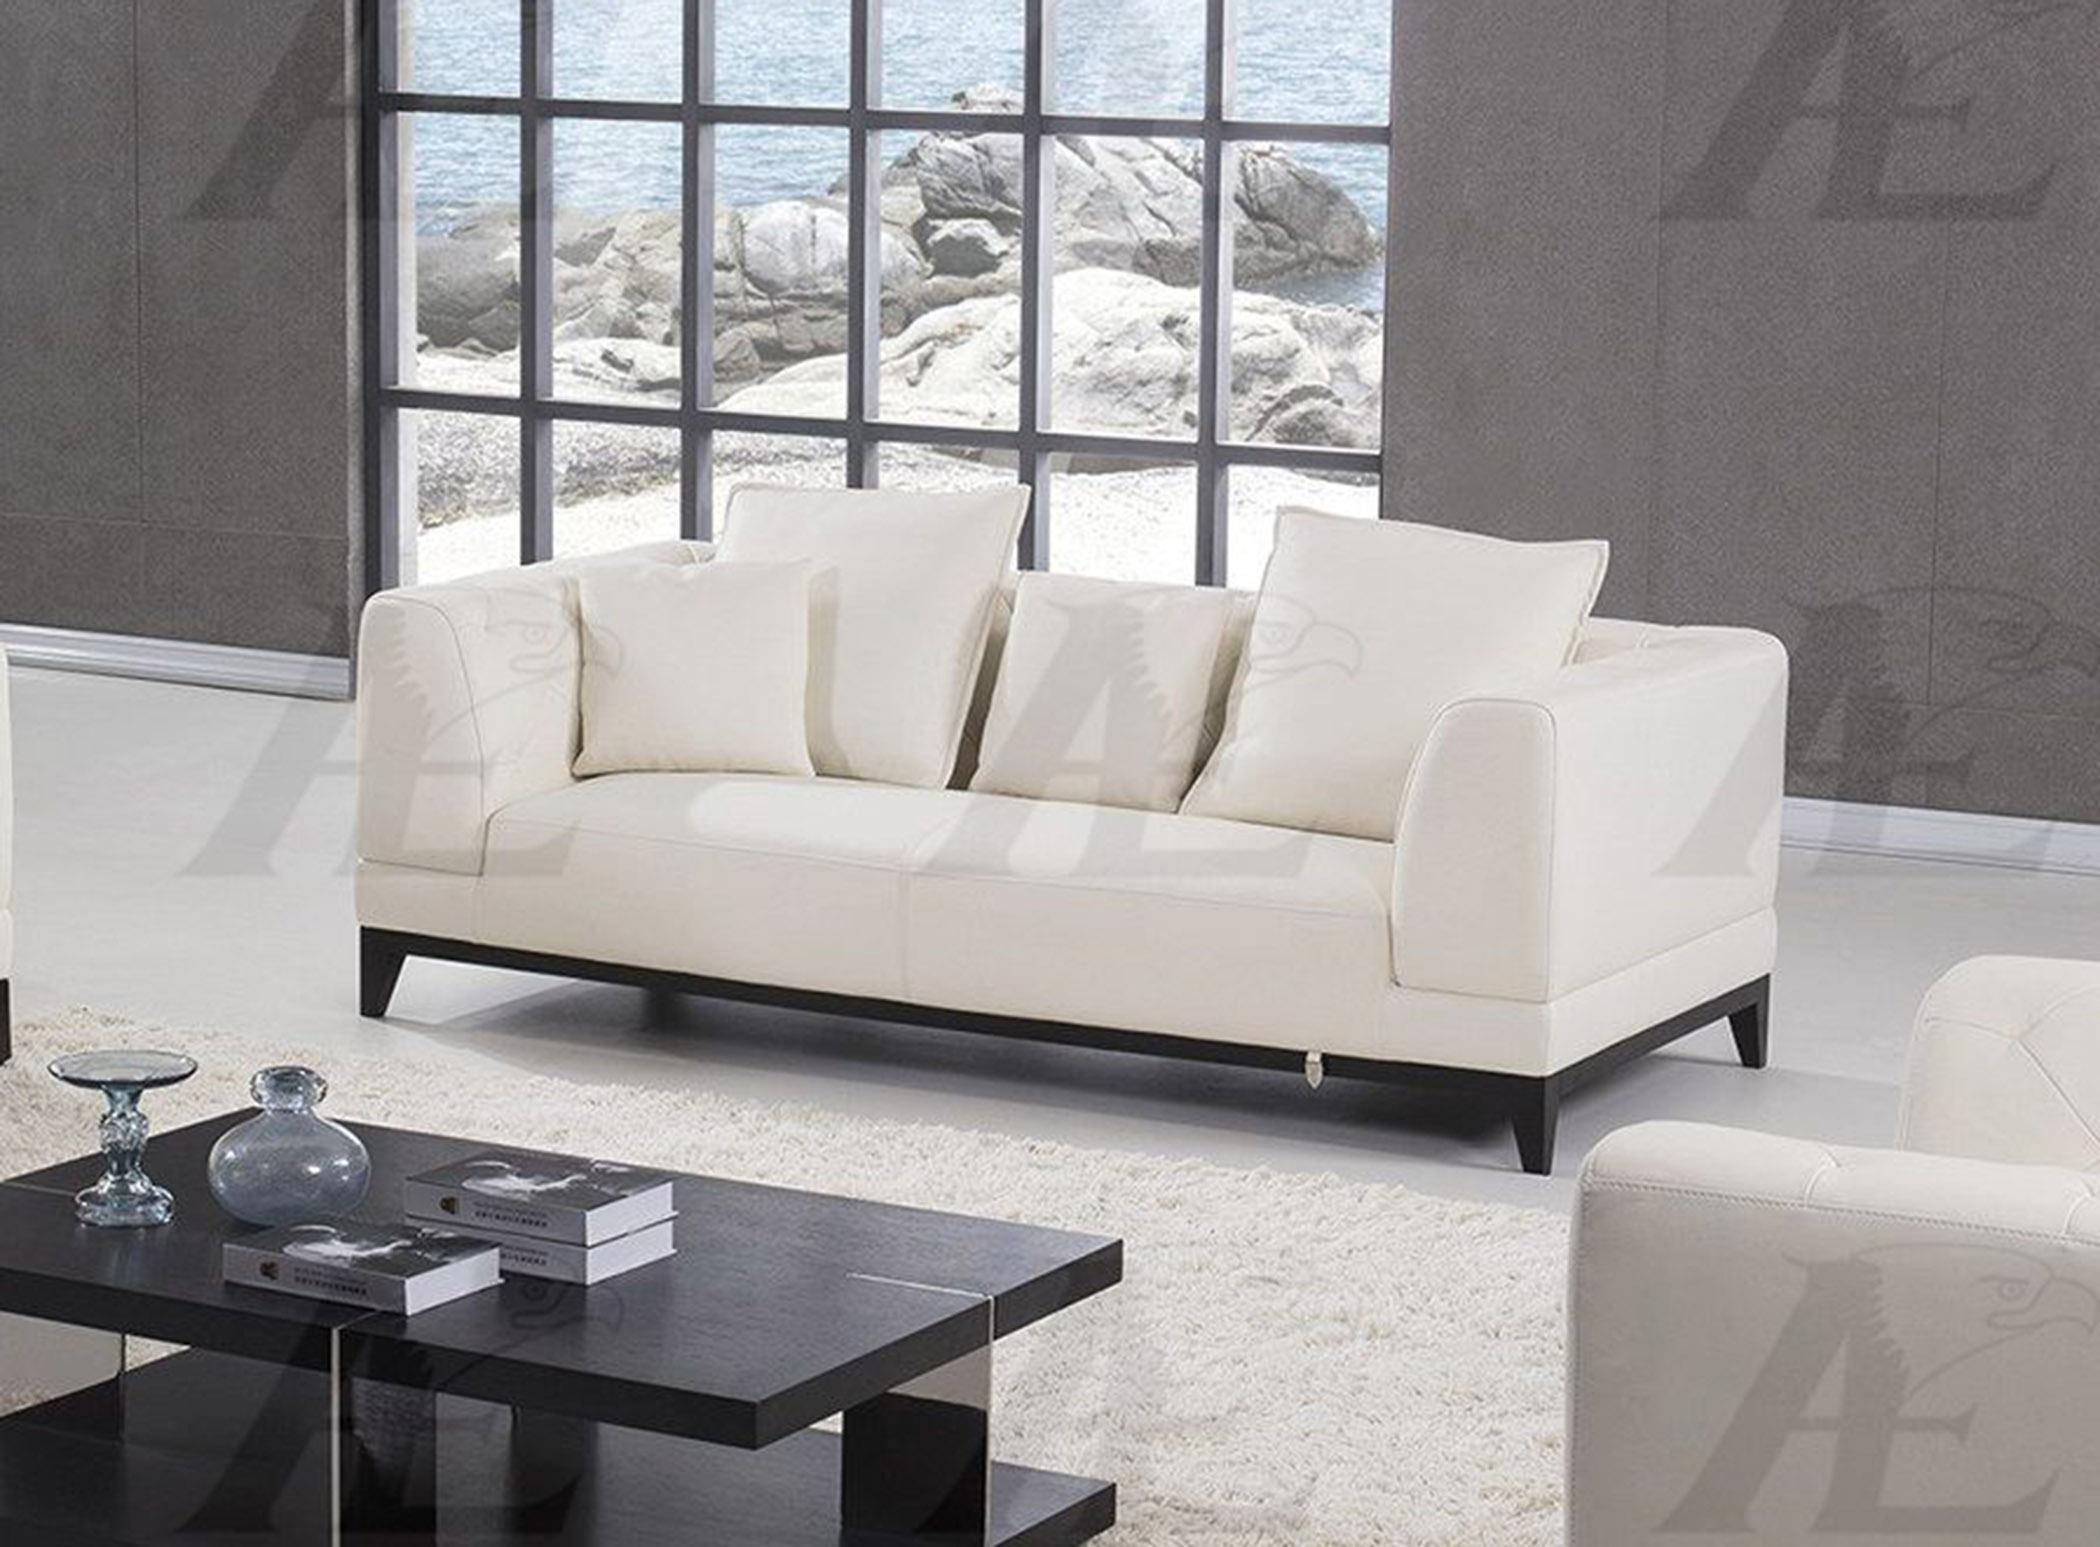 

    
American Eagle Furniture  EK065-W White Sofa  Italian Full Leather
